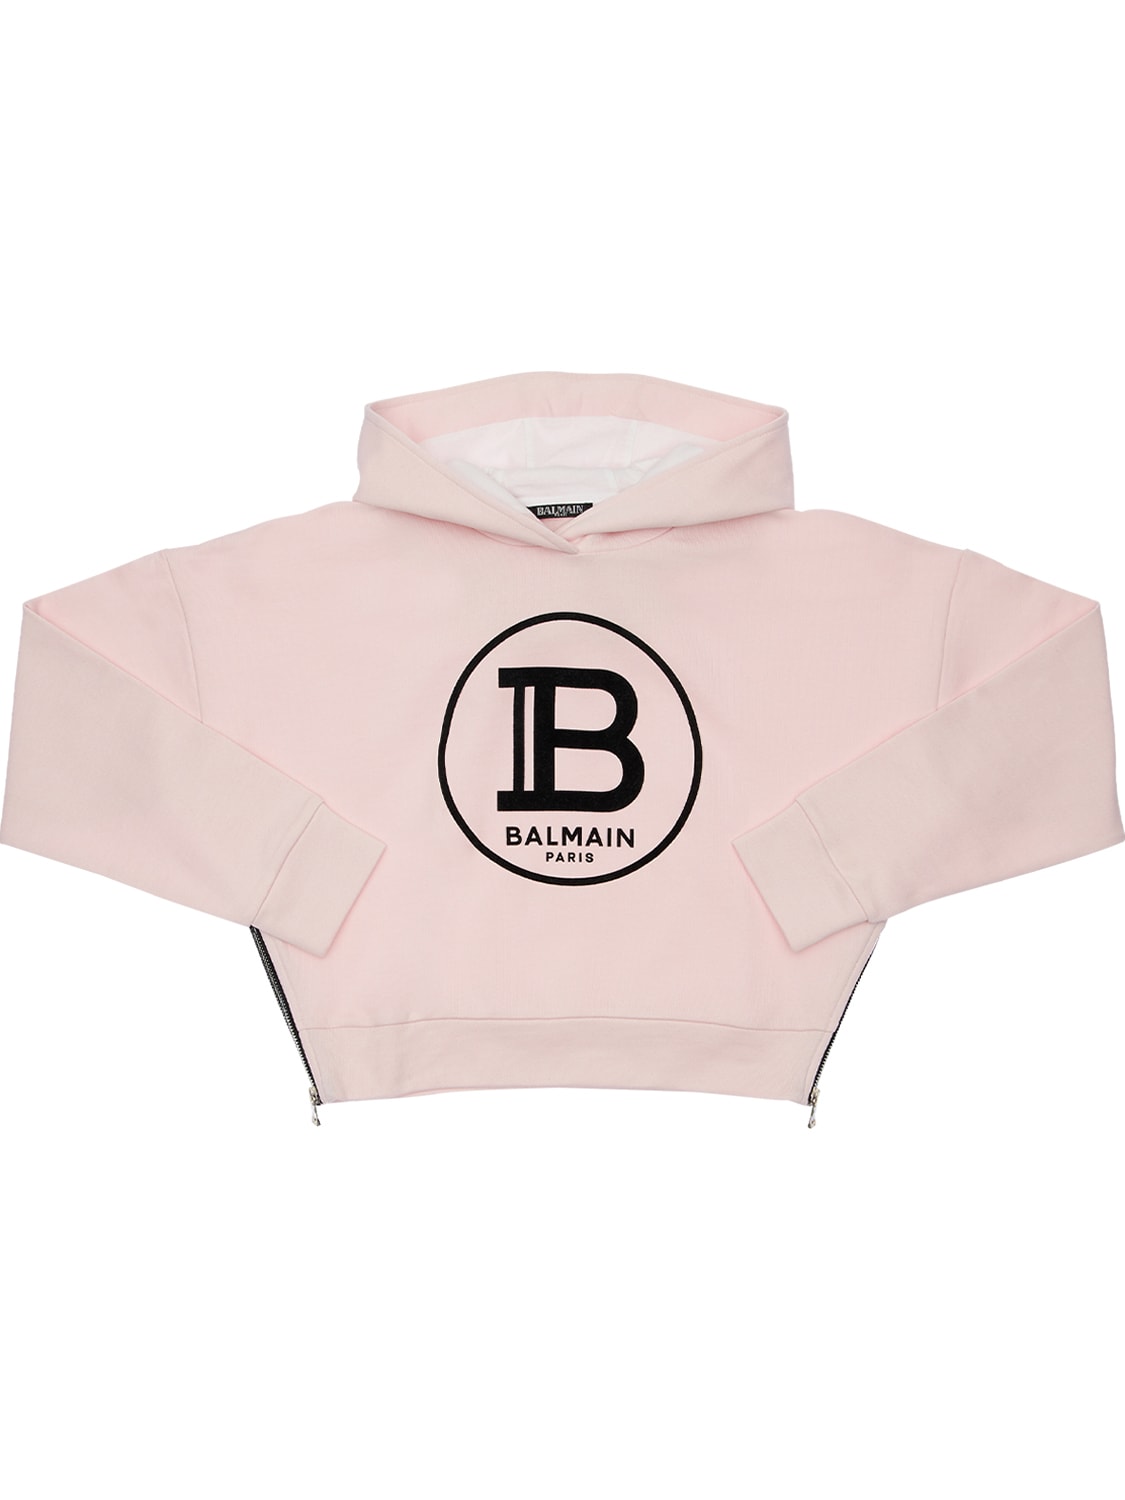 Balmain Kids' Cropped Sweatshirt Hoodie W/ Flock Print In Pink